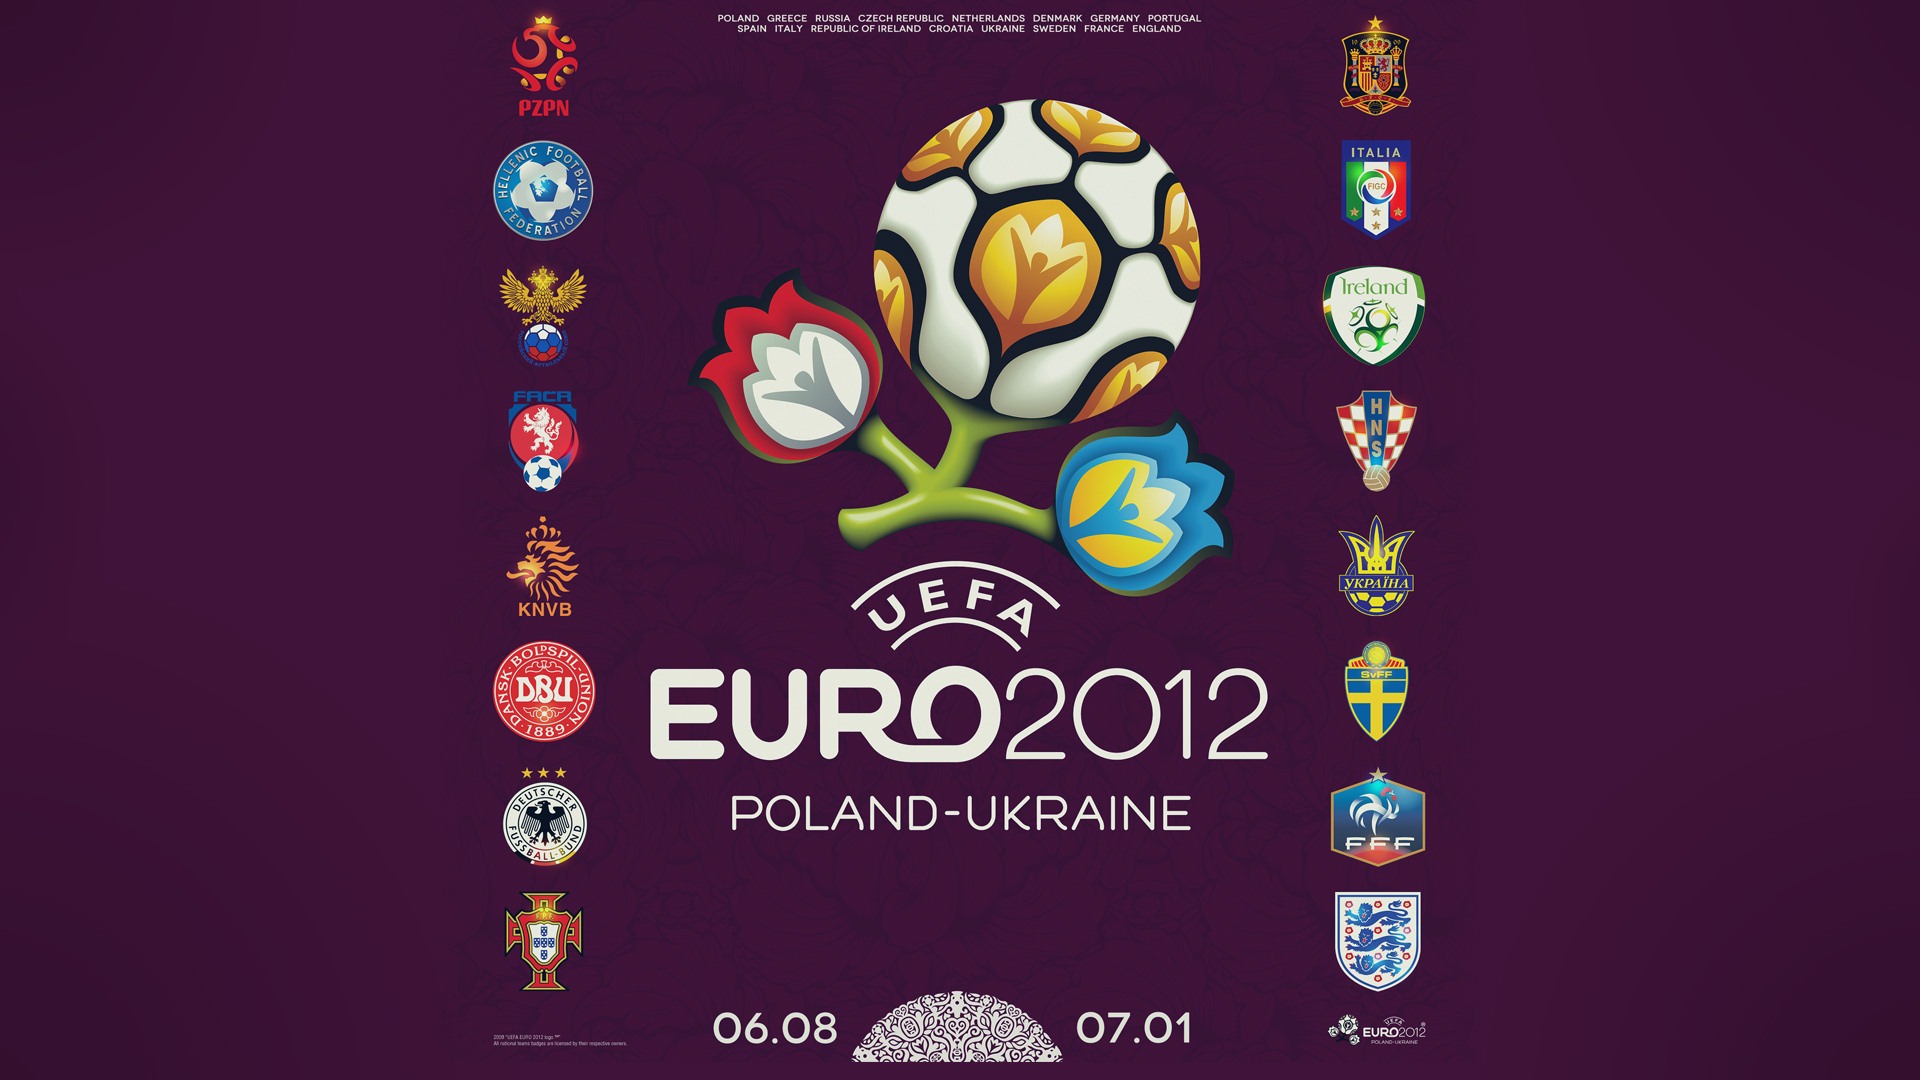 UEFA EURO 2012 欧洲足球锦标赛 高清壁纸(二)12 - 1920x1080